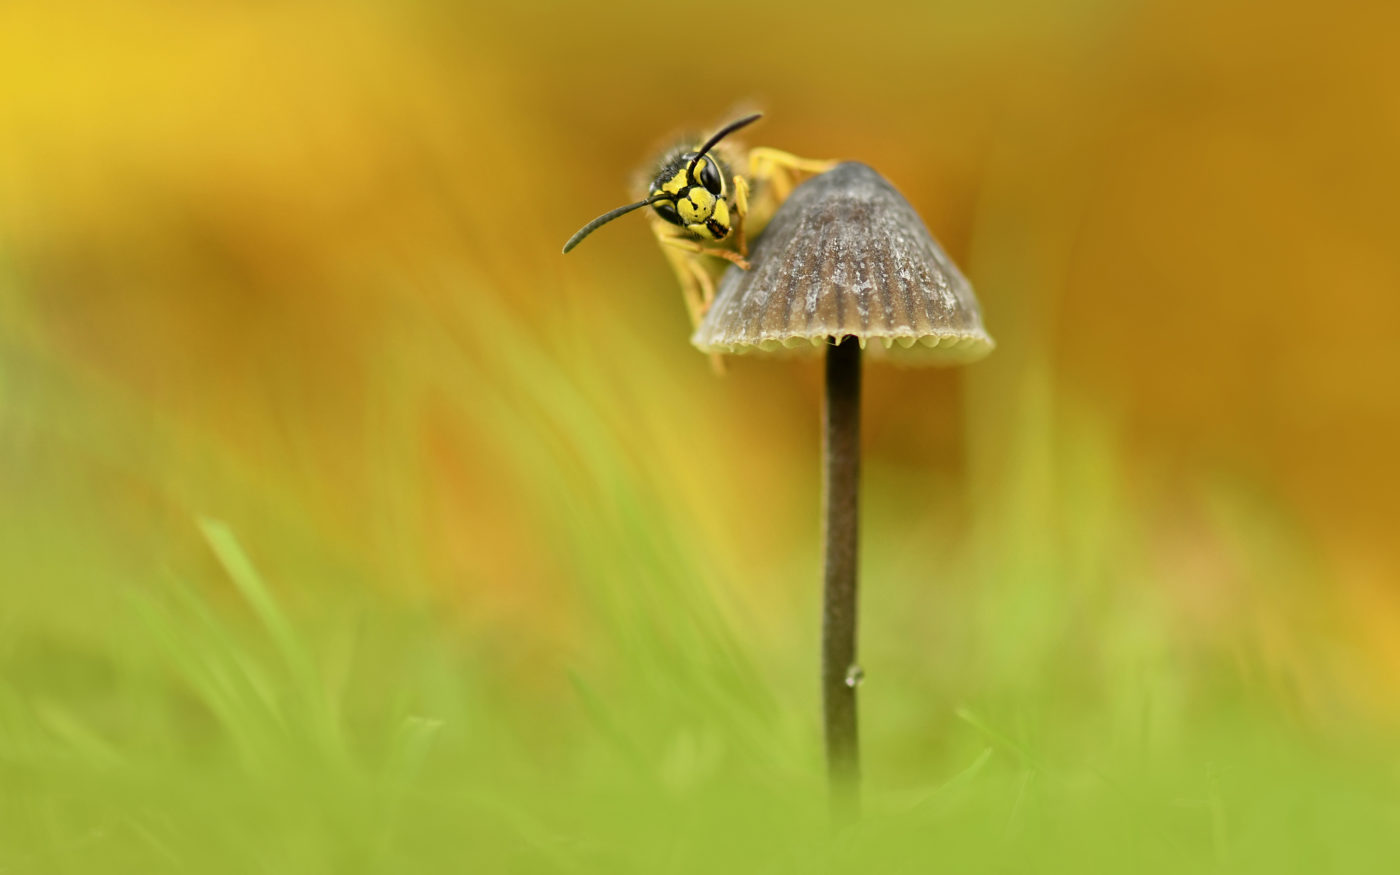 Wasp on mushroom